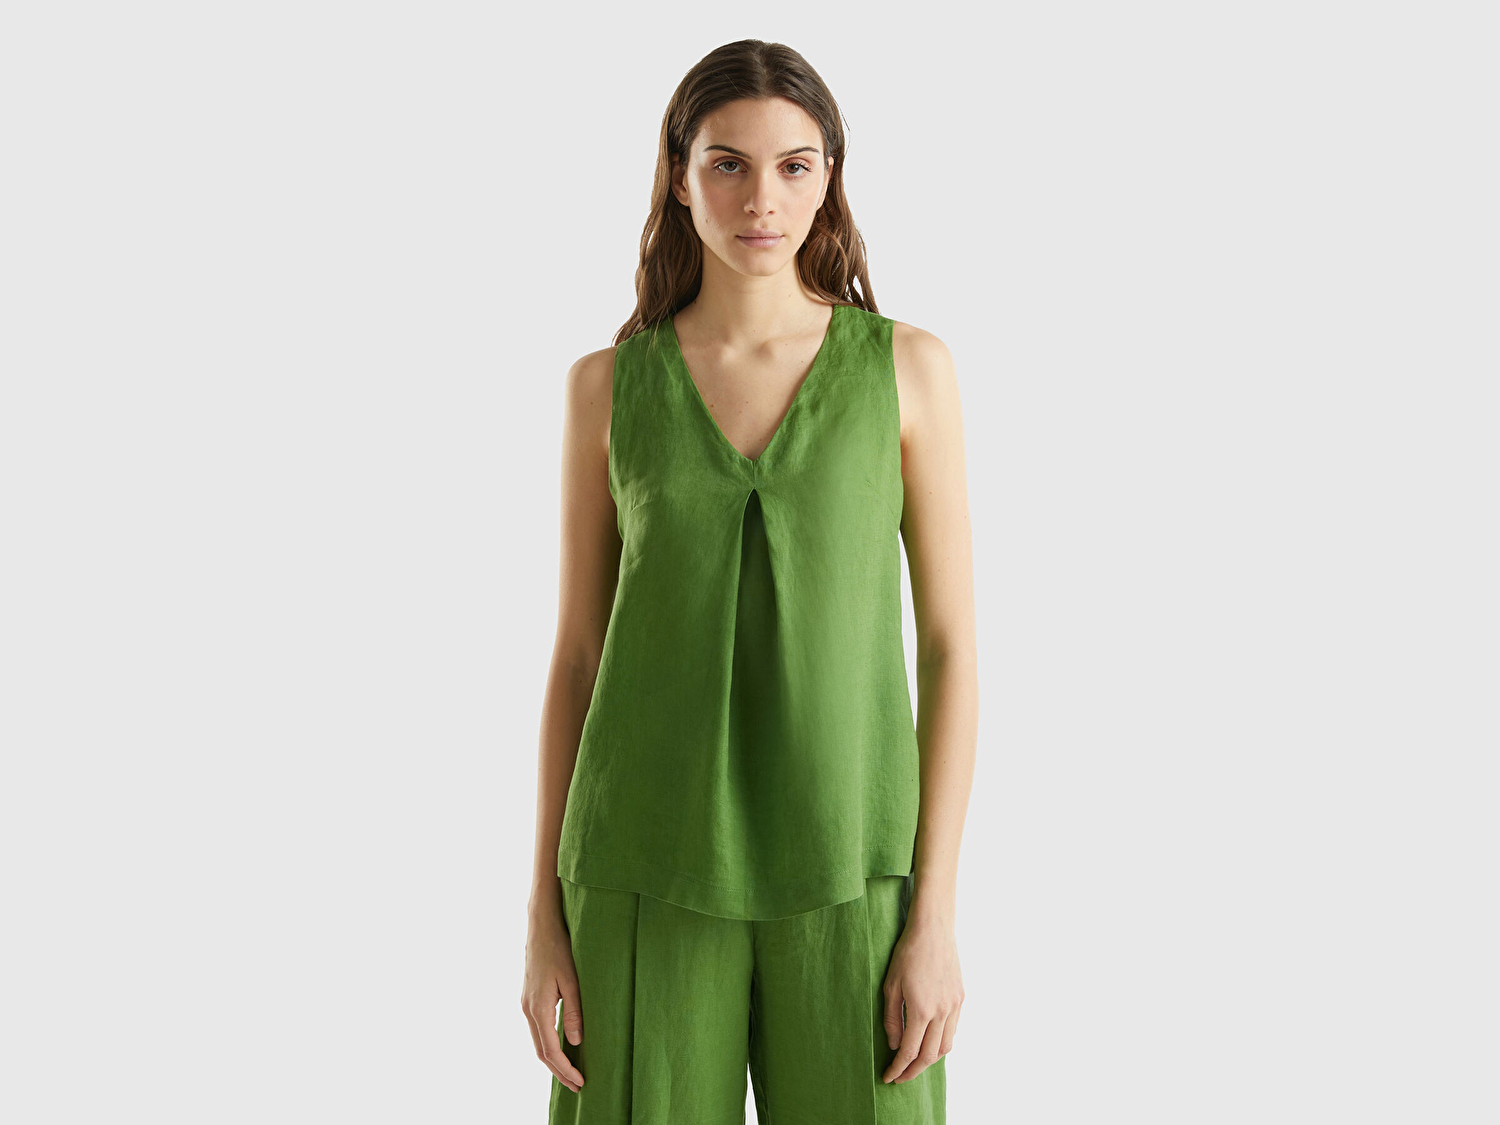 Benetton Kadın Soluk Yeşil %100 Keten V Yaka Kolsuz Geniş Kesim Bluz